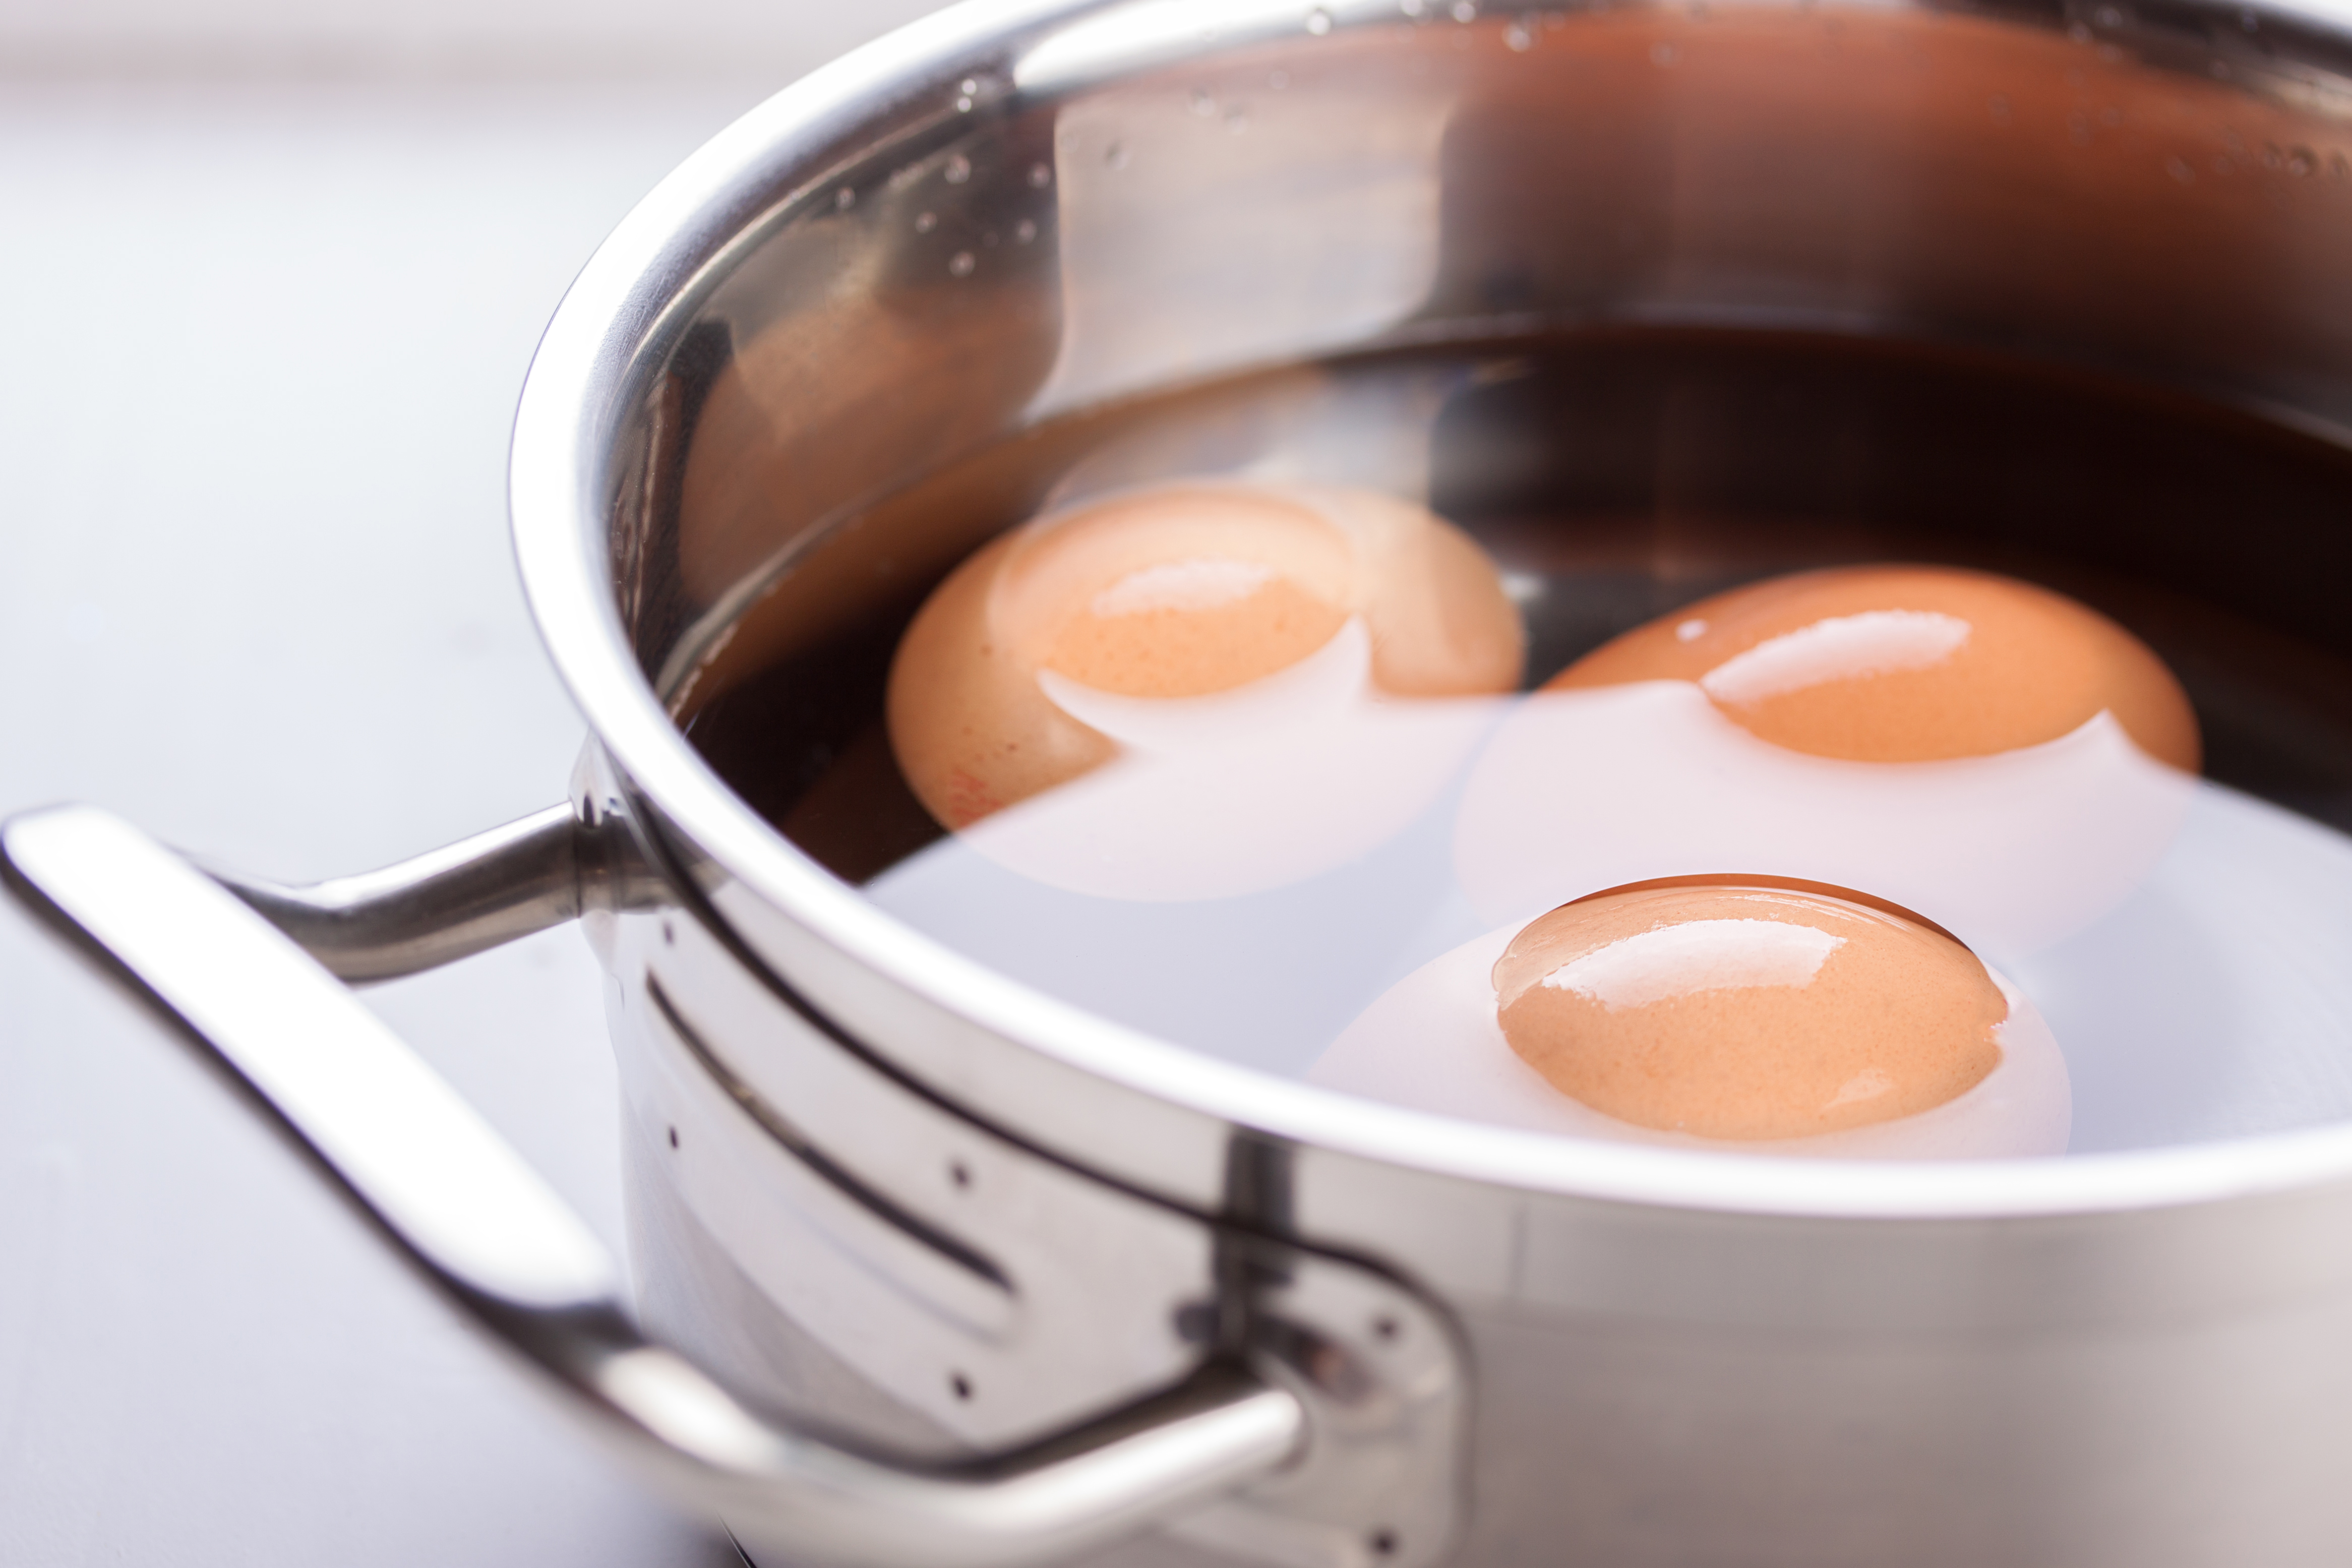 냄비에 계란을 넣고&#44; 현미식초를 넣어 만든 계란식초 사진 - 소음인(少陰人)에게 맞는 음식